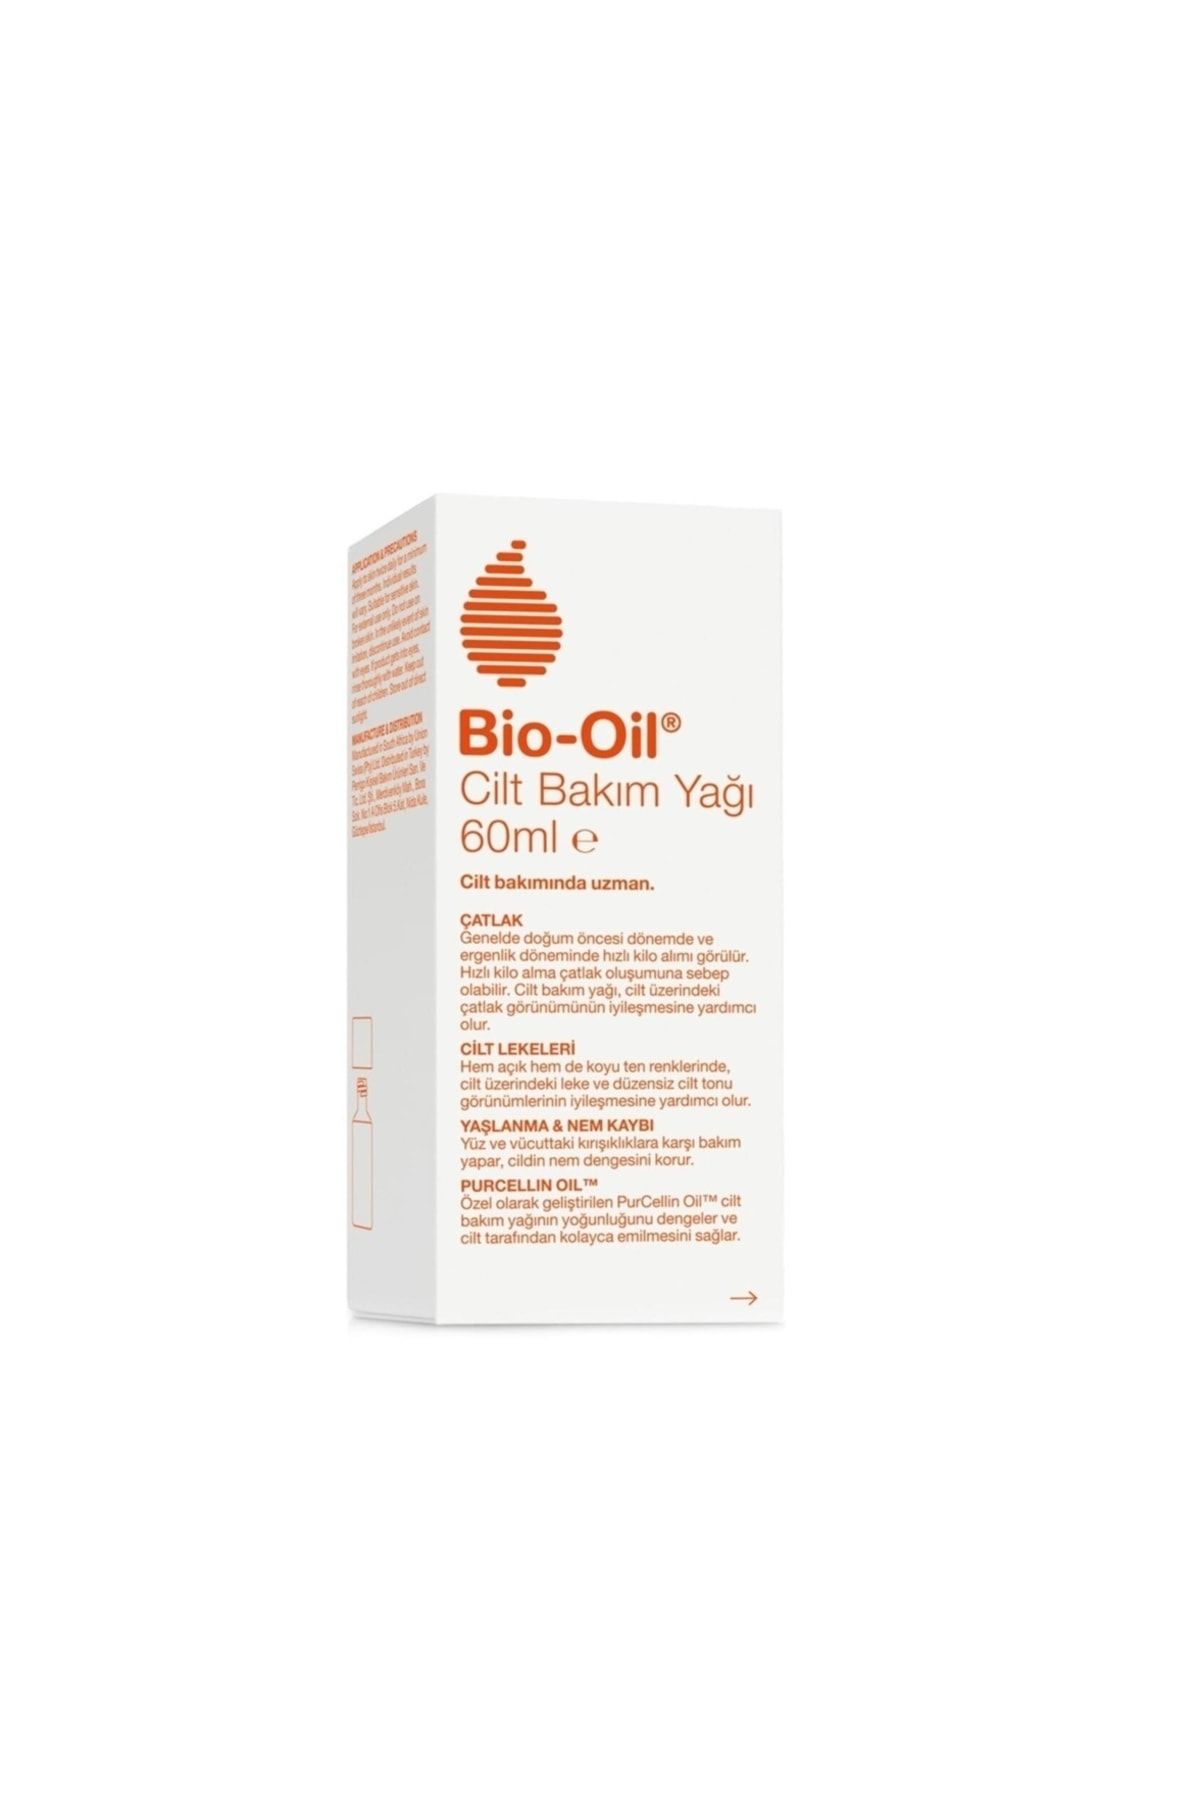 Bio-Oil Cilt Bakım Yağı 8 Haftada Çatlak, Cilt Lekeleri Ve Kırışıklıklarda Azalma 60ml